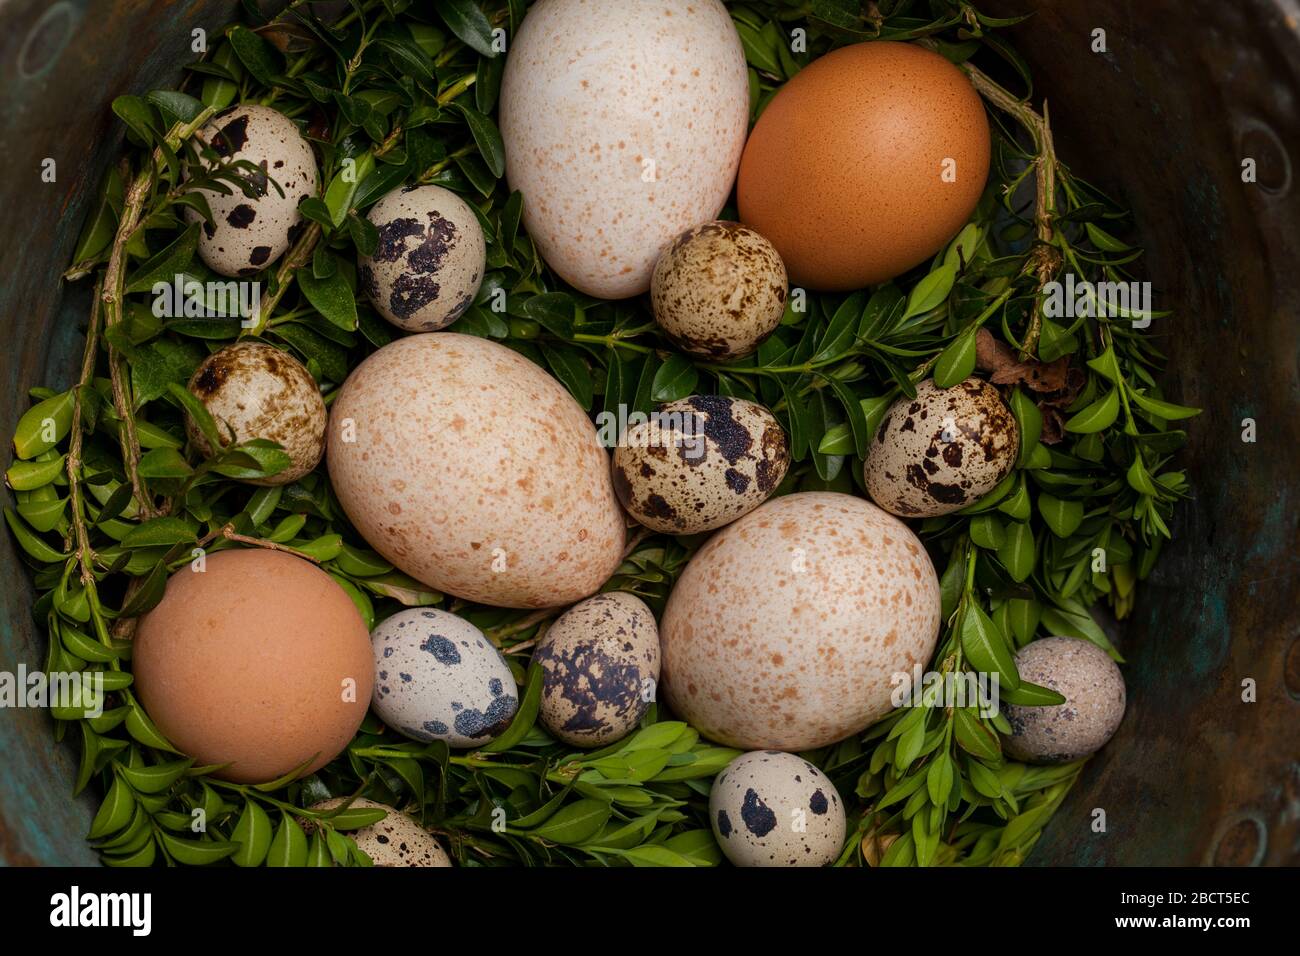 Poulet vintage, dinde et œufs de caille dans un bol en cuivre. Concept de Pâques. Banque D'Images